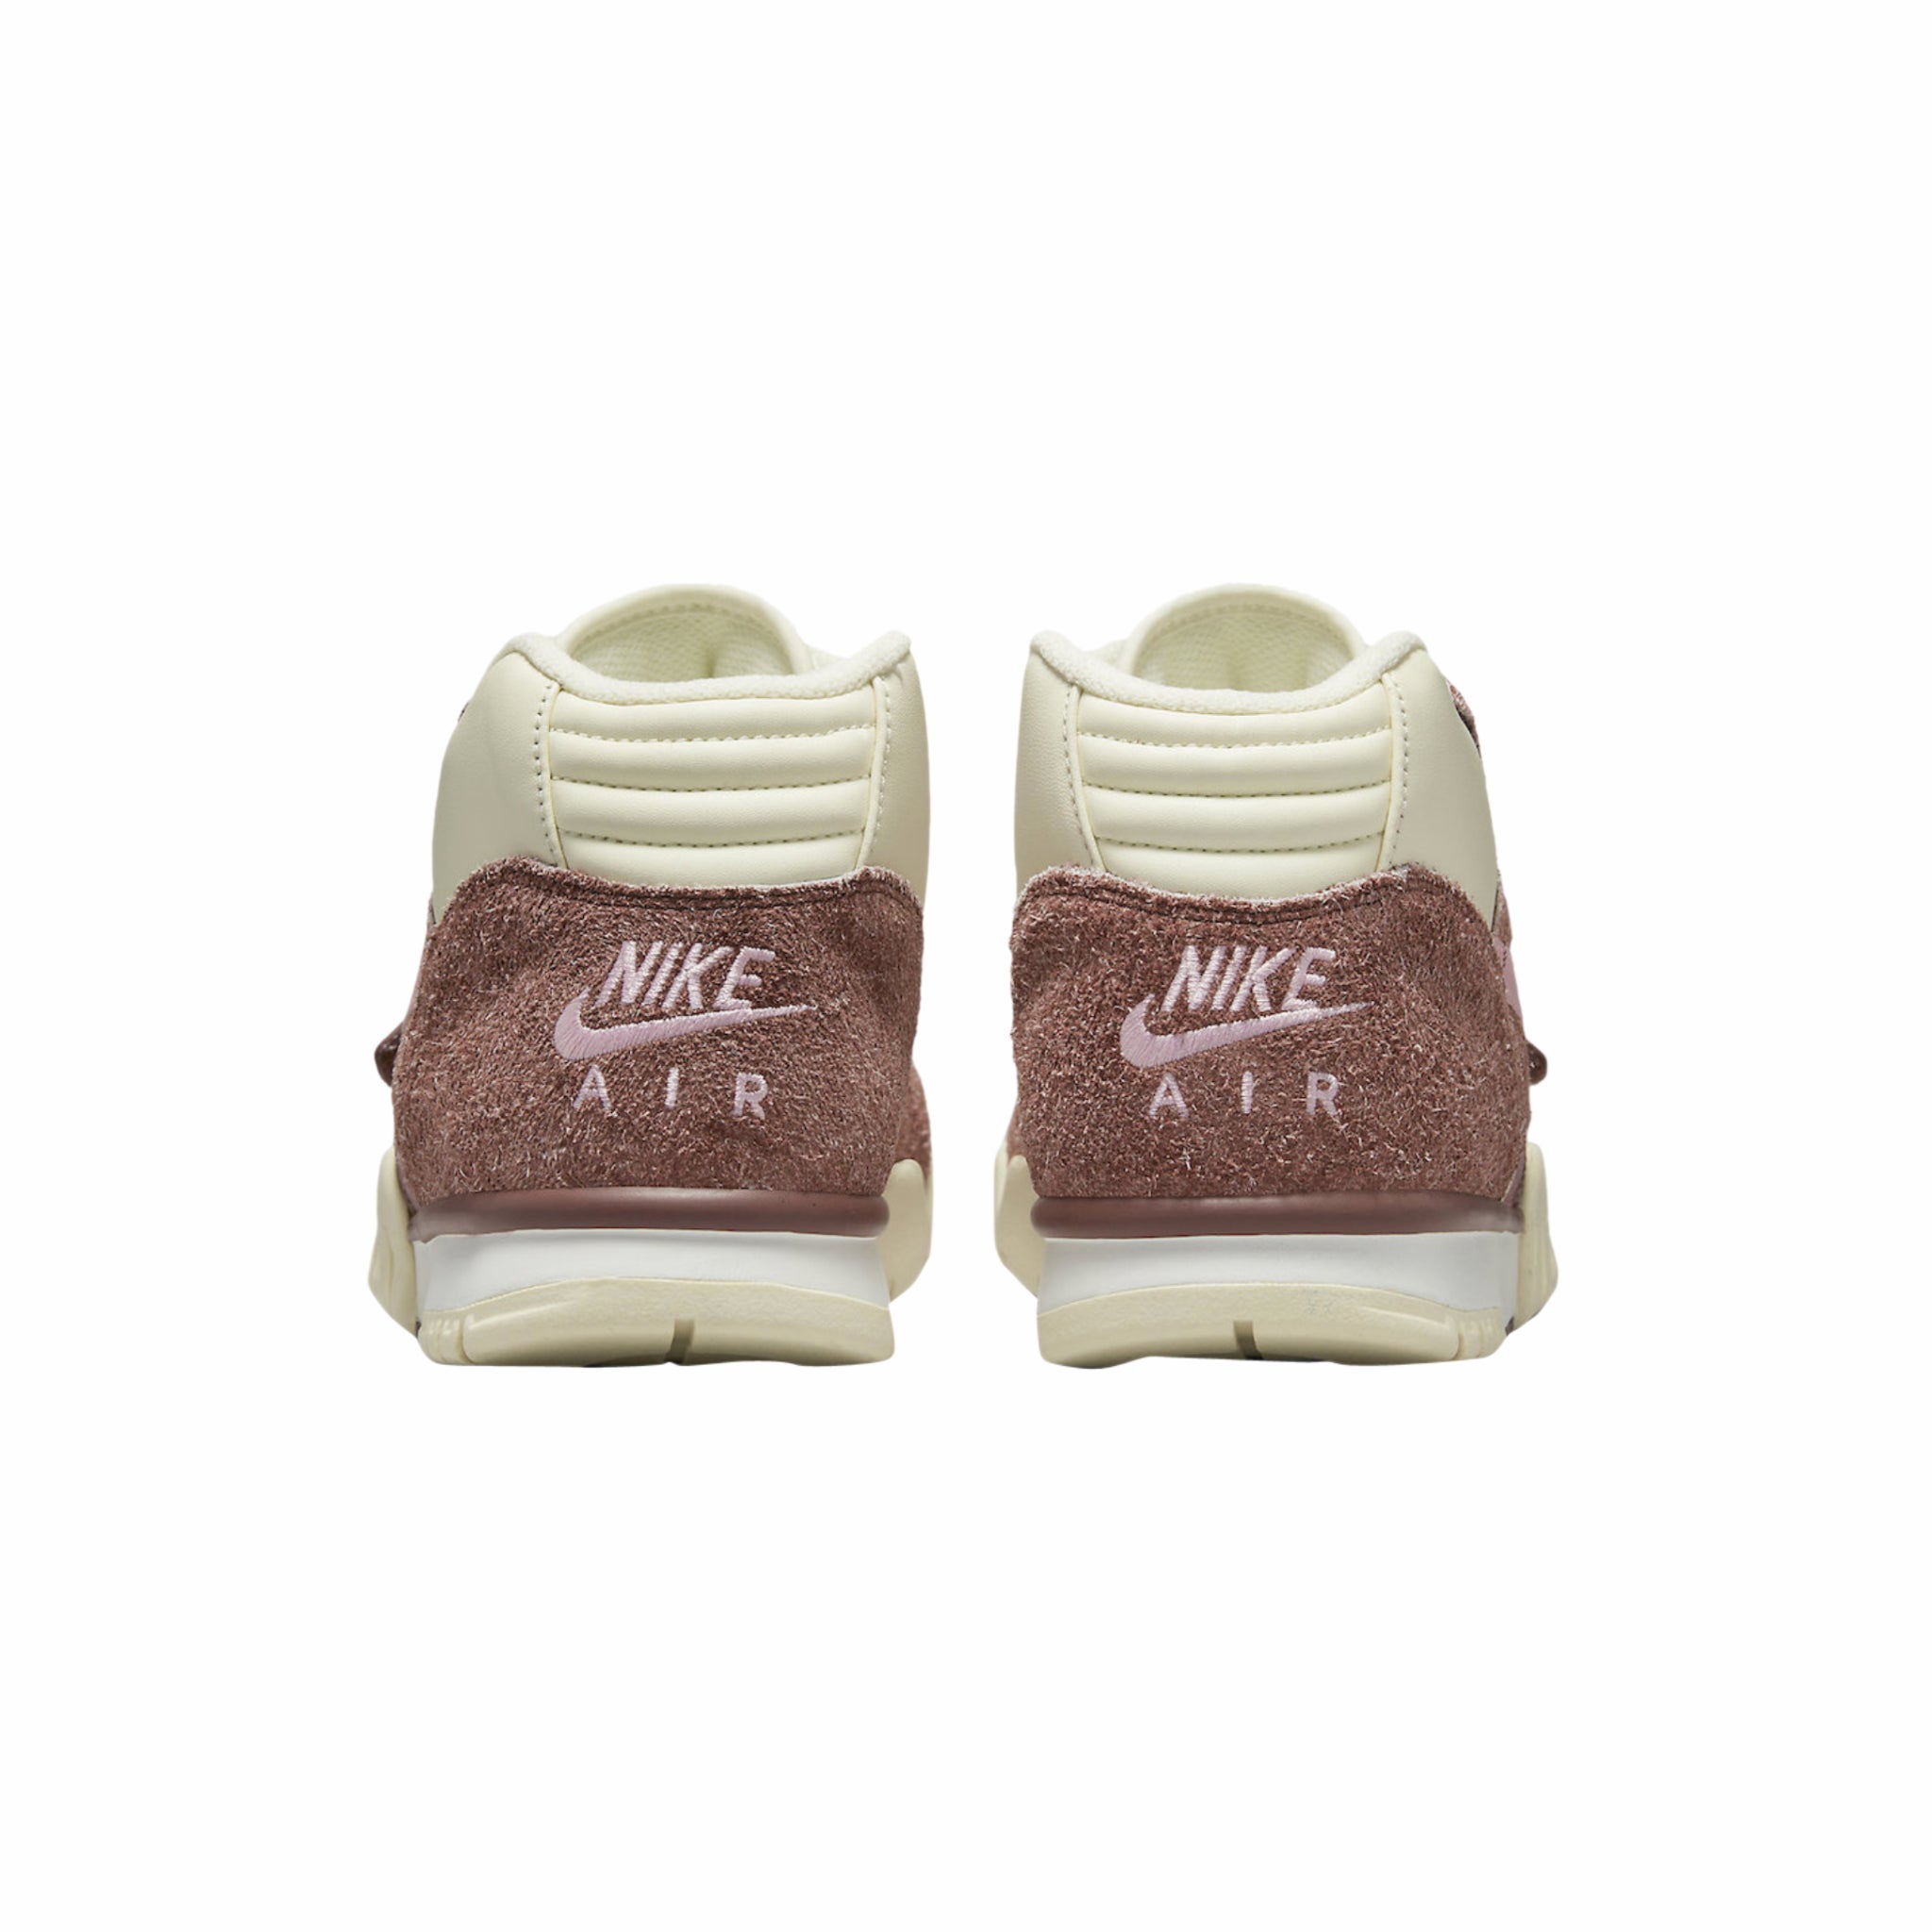 Nike Air Trainer 1 “Valentine” (Dark Pony/Med Soft Pink-Coconut Milk) - August Shop